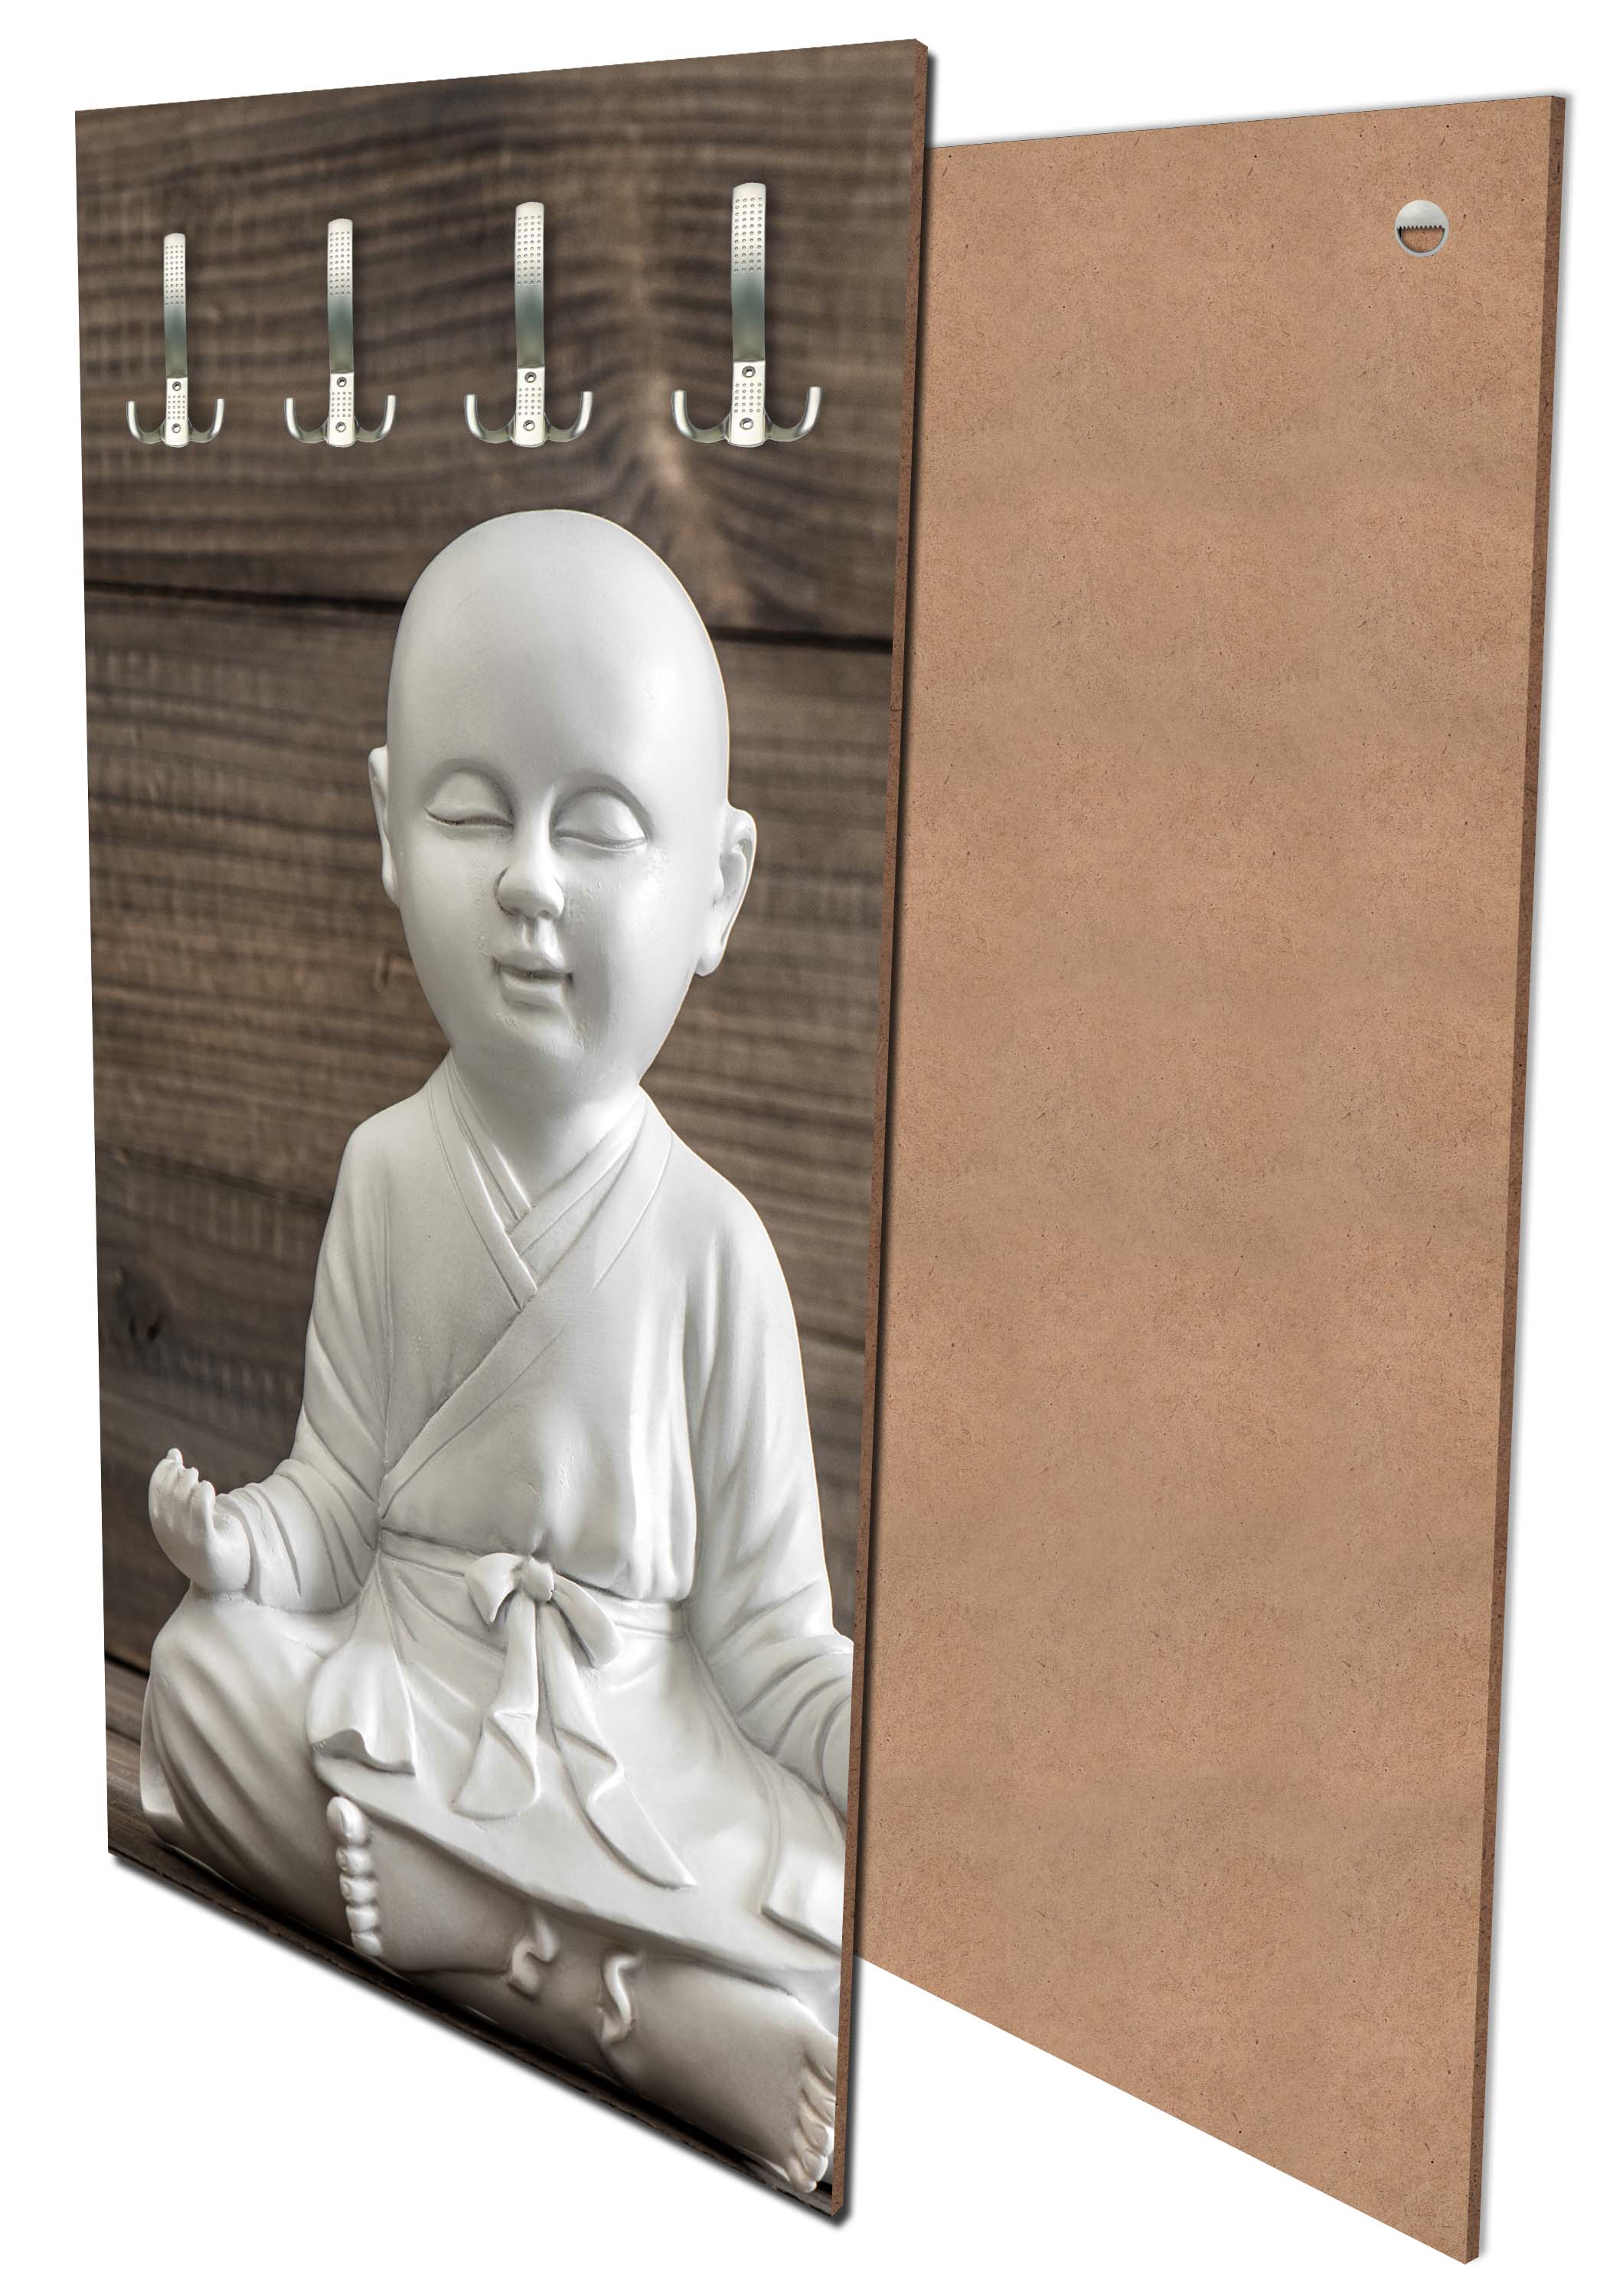 Garderobe Weiß sitzender Buddha M0974 entdecken - Bild 1